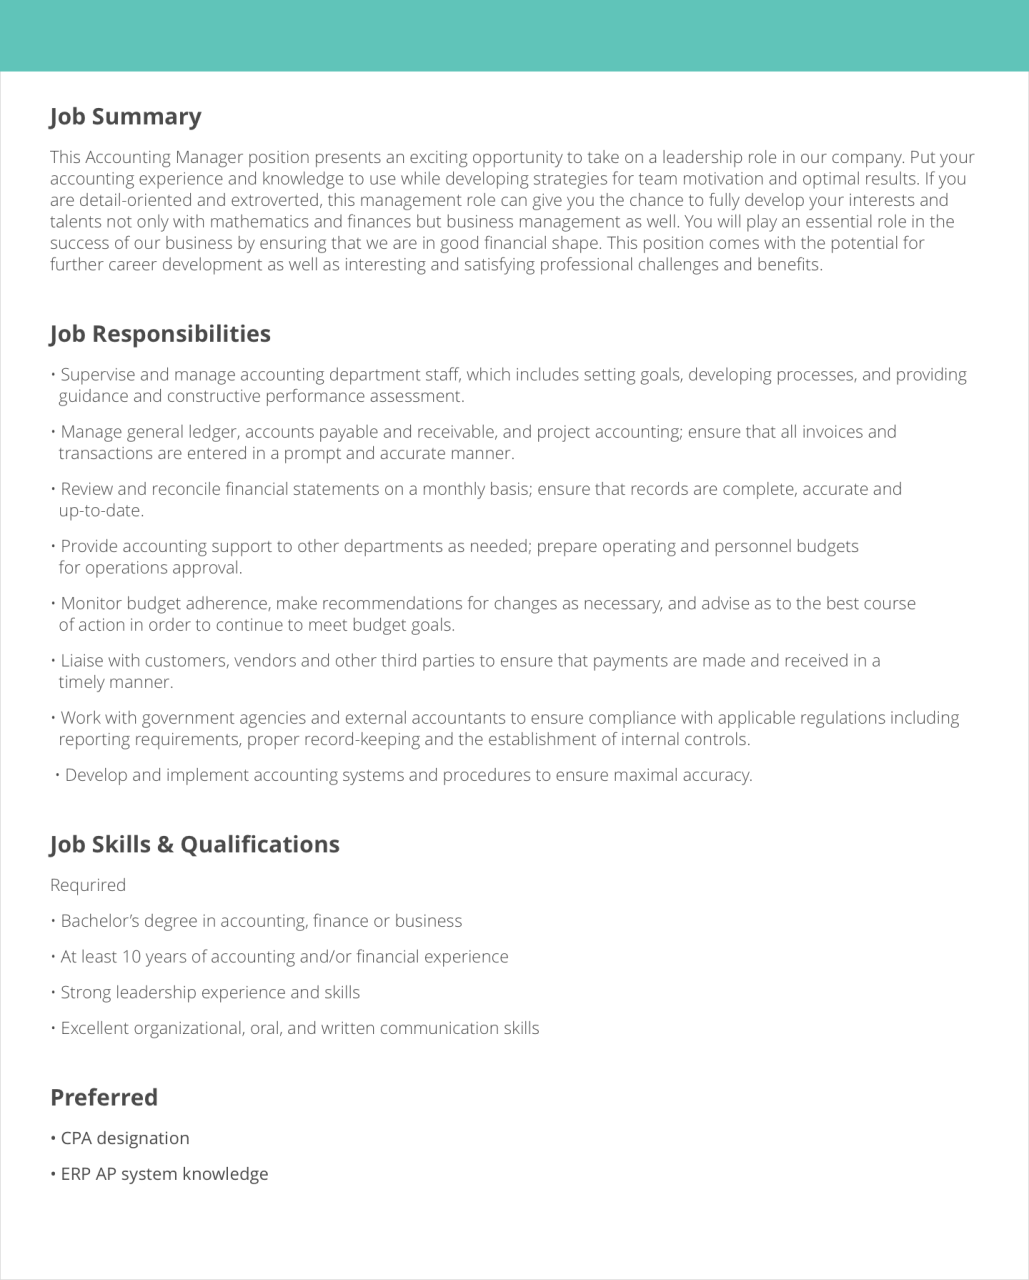 Education Job Description Templates & Samples LiveCareer